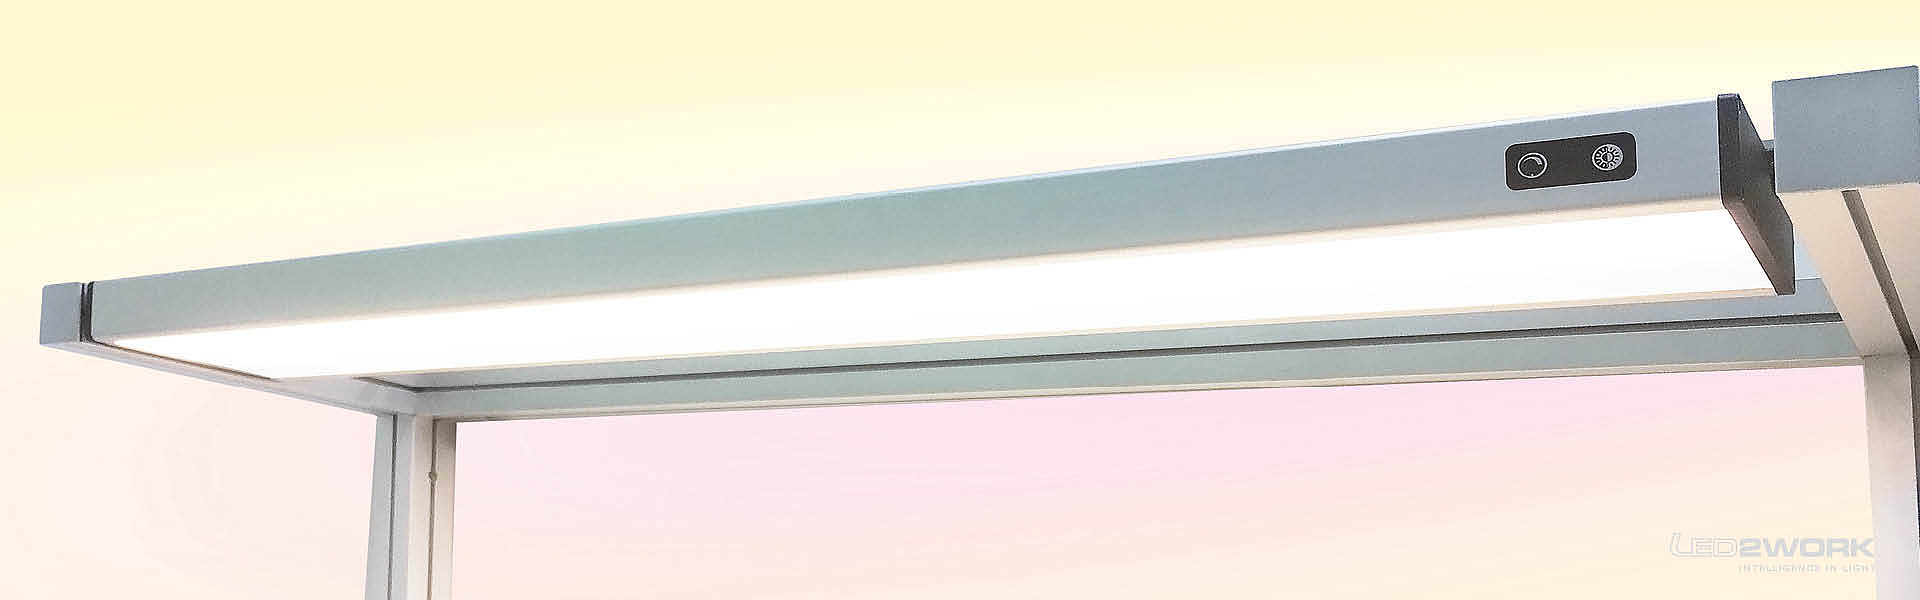 Illustration du luminaire LED pour poste de travail | Luminaire système LED SYSTEMLED TUNABLE WHITE de LED2WORK